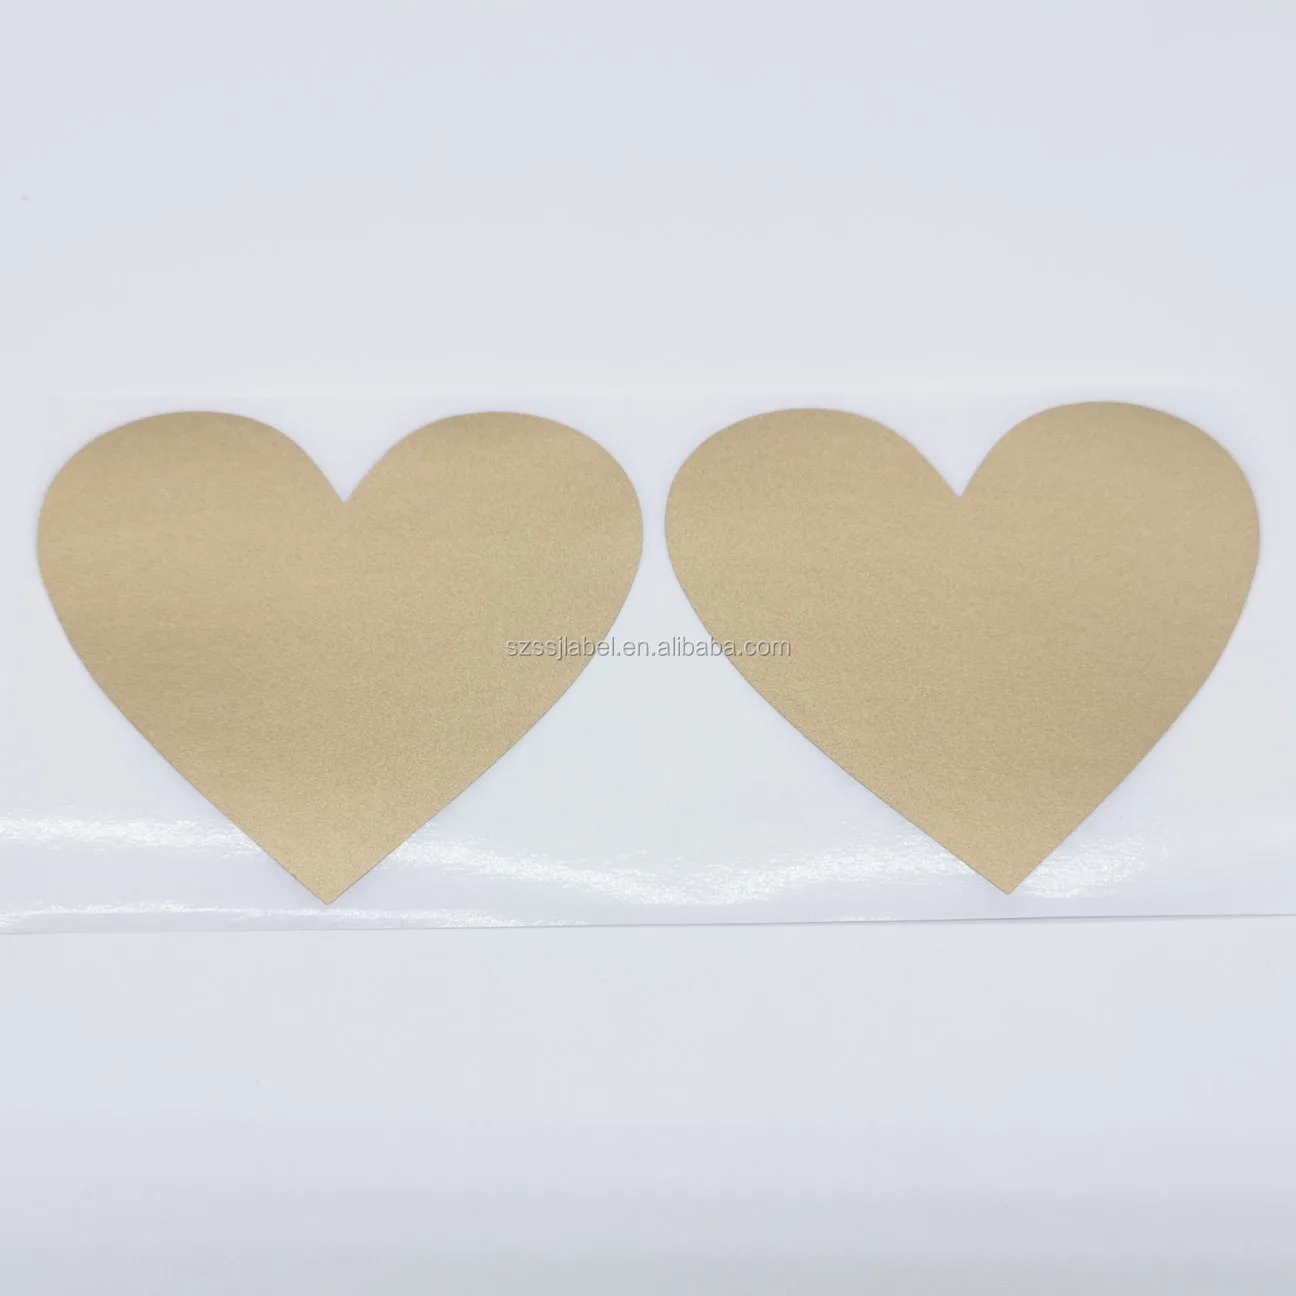 Message Sticker Scratch Off 70x80mm Love Heart Shape Gold Blank Cover Wedding 